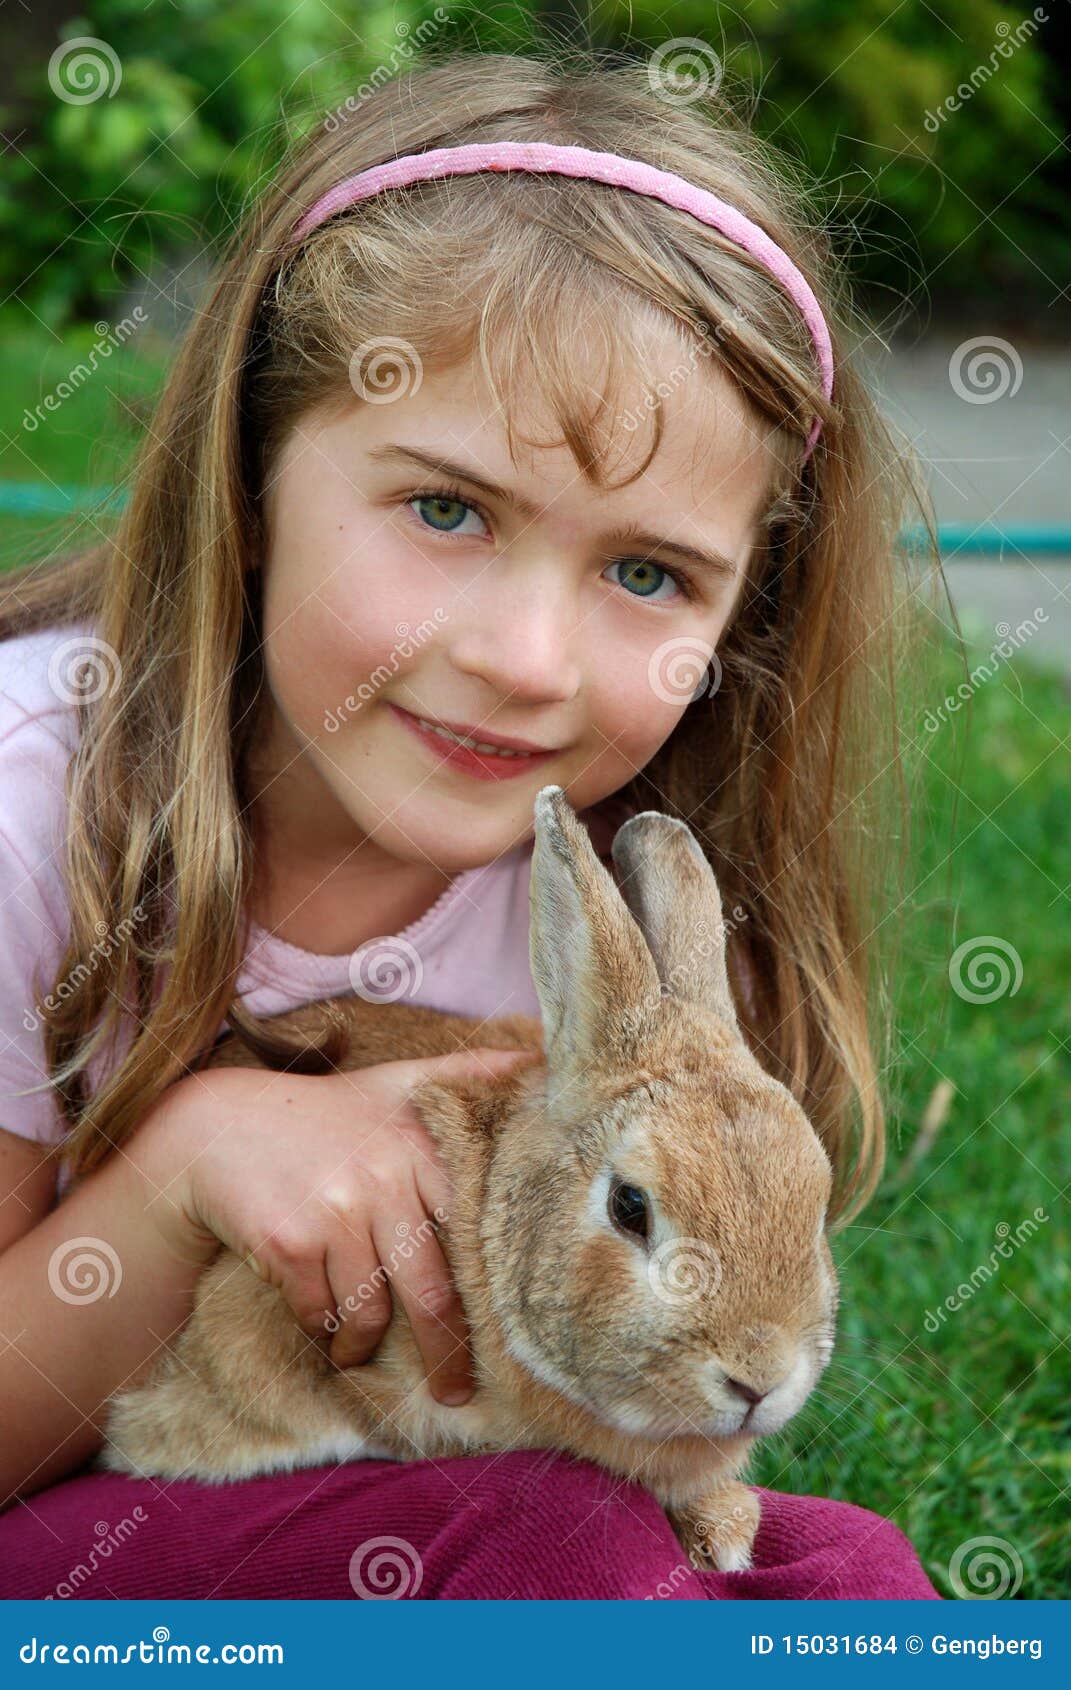 兔宝宝耳朵女孩一点周道的粉红色 库存图片. 图片 包括有 人们, 纵向, 兔宝宝, 乐趣, 滑稽, 作梦 - 24089191